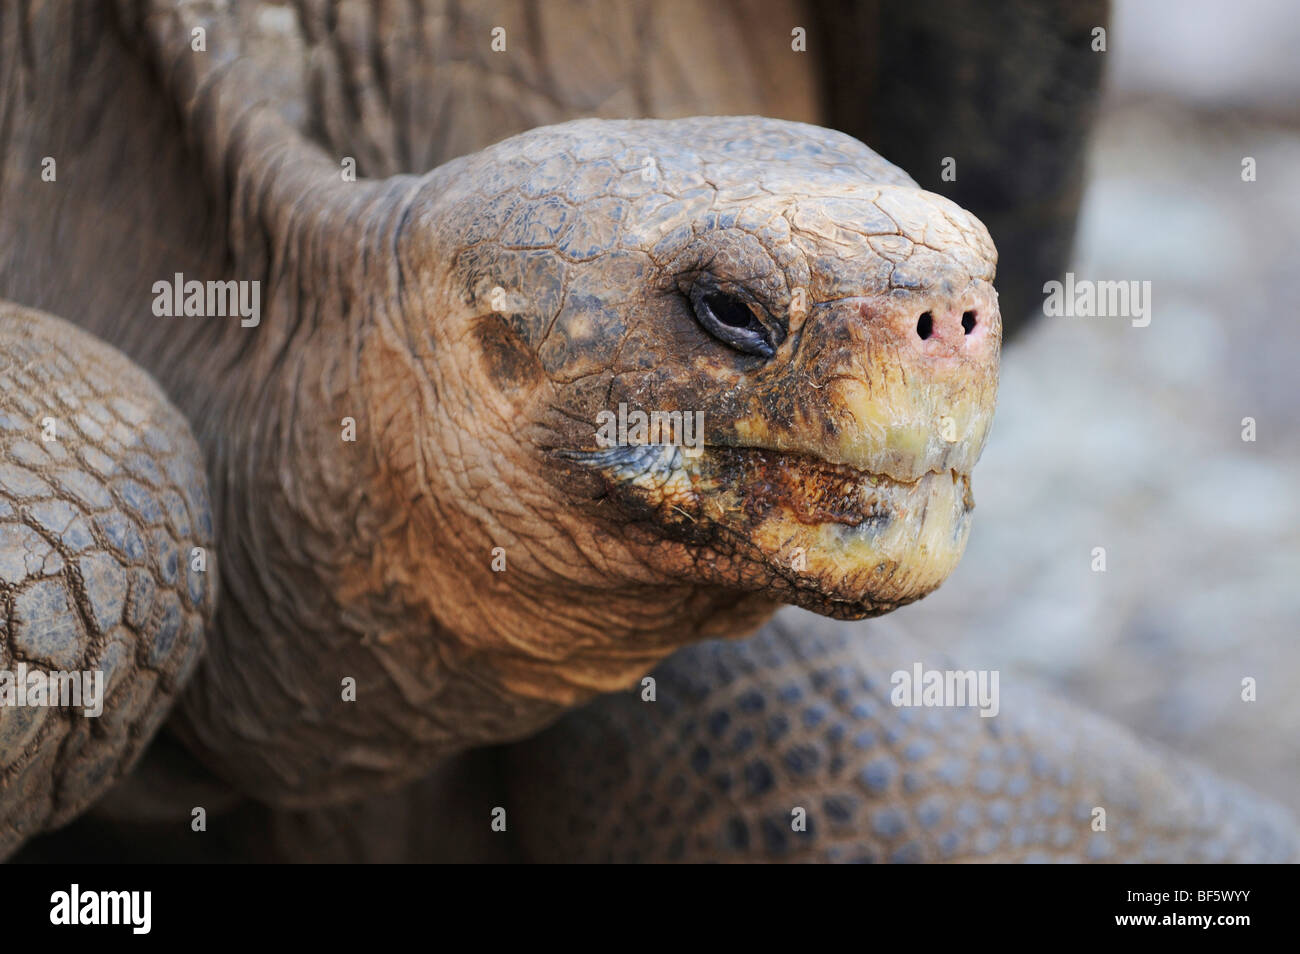 Tortuga Gigante de las Galápagos (Geochelone elephantopus), adulto, las Islas Galápagos, Ecuador, Sudamérica Foto de stock